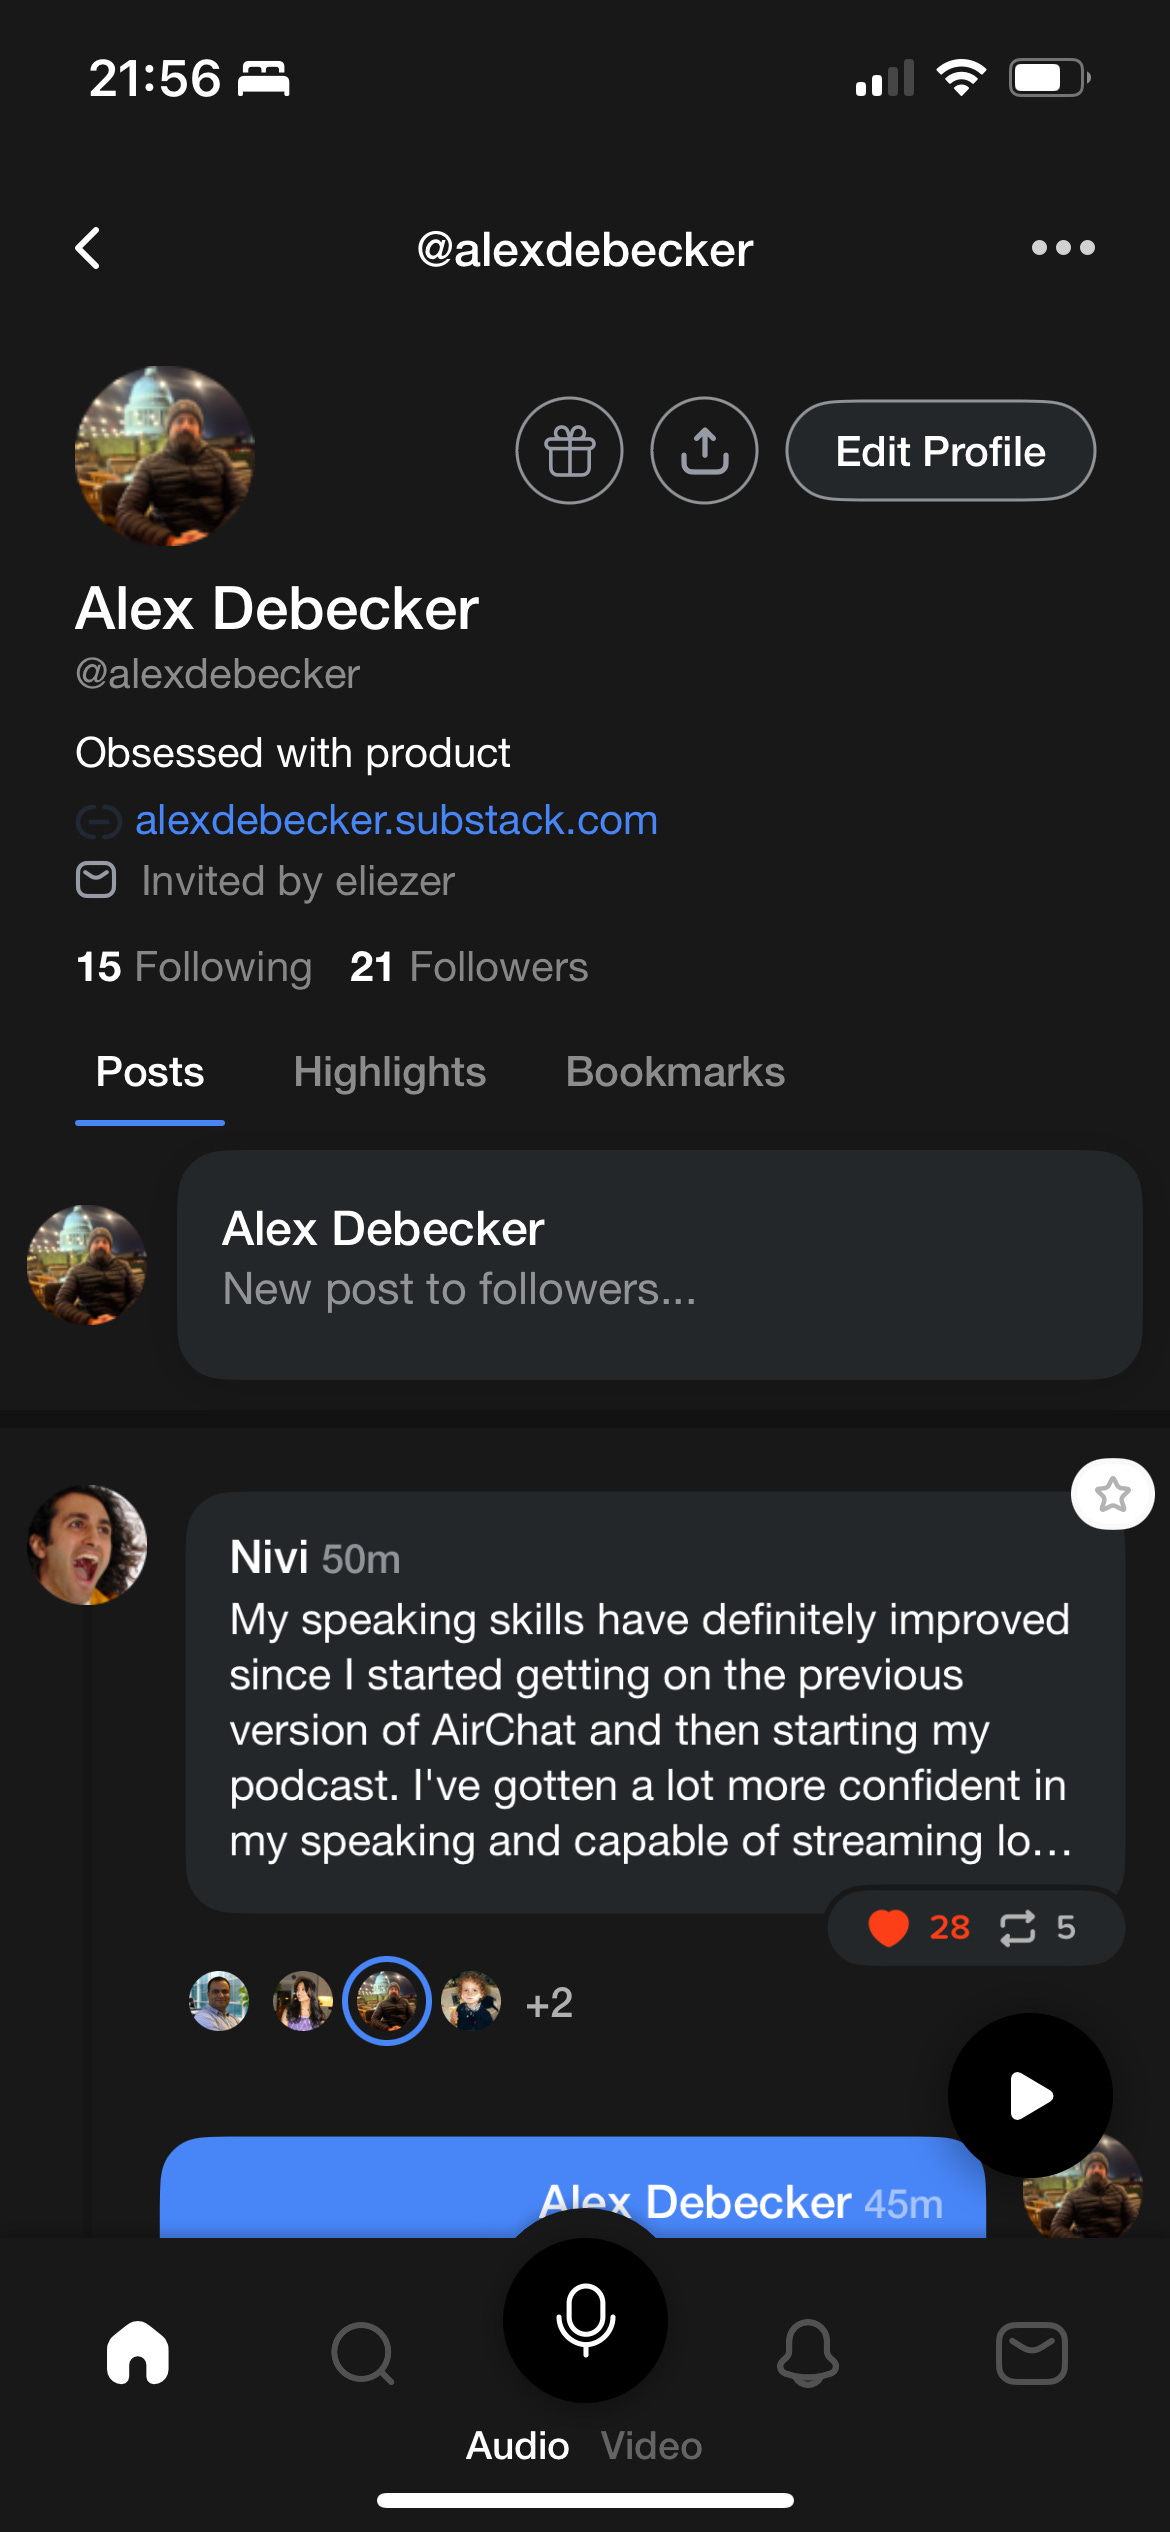 alex debecker's airchat profile